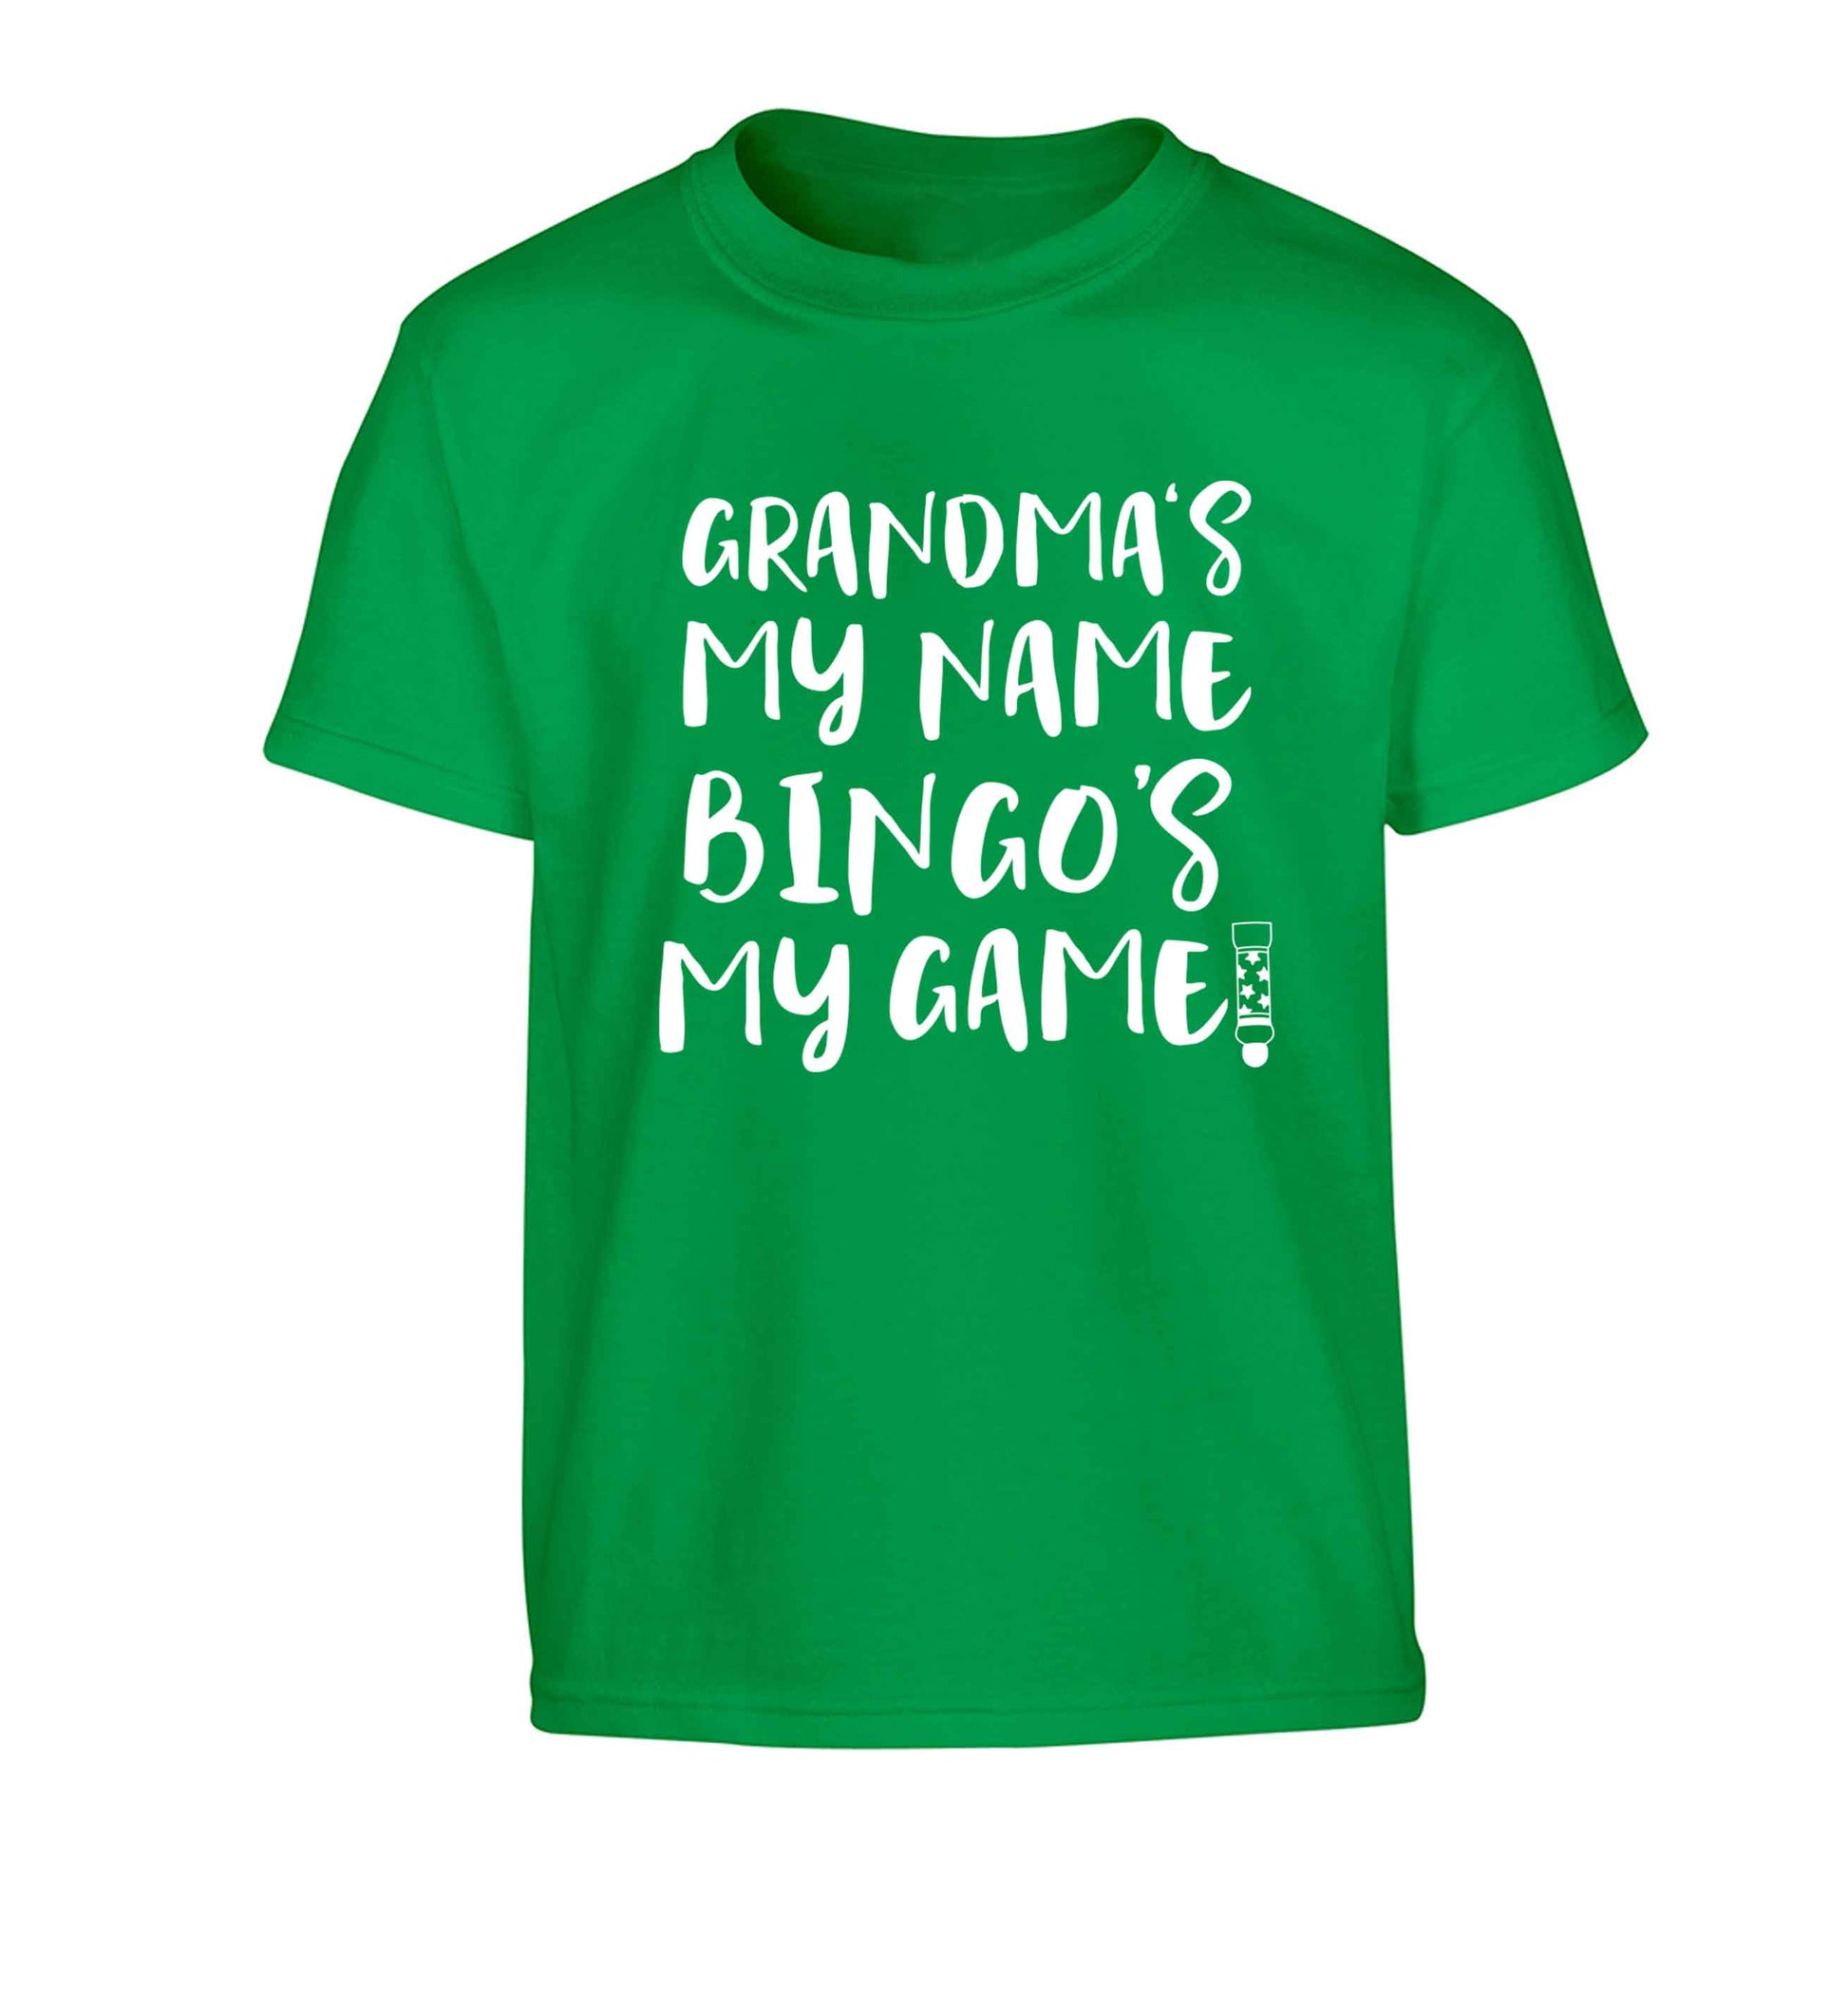 Grandma's my name bingo's my game! Children's green Tshirt 12-13 Years